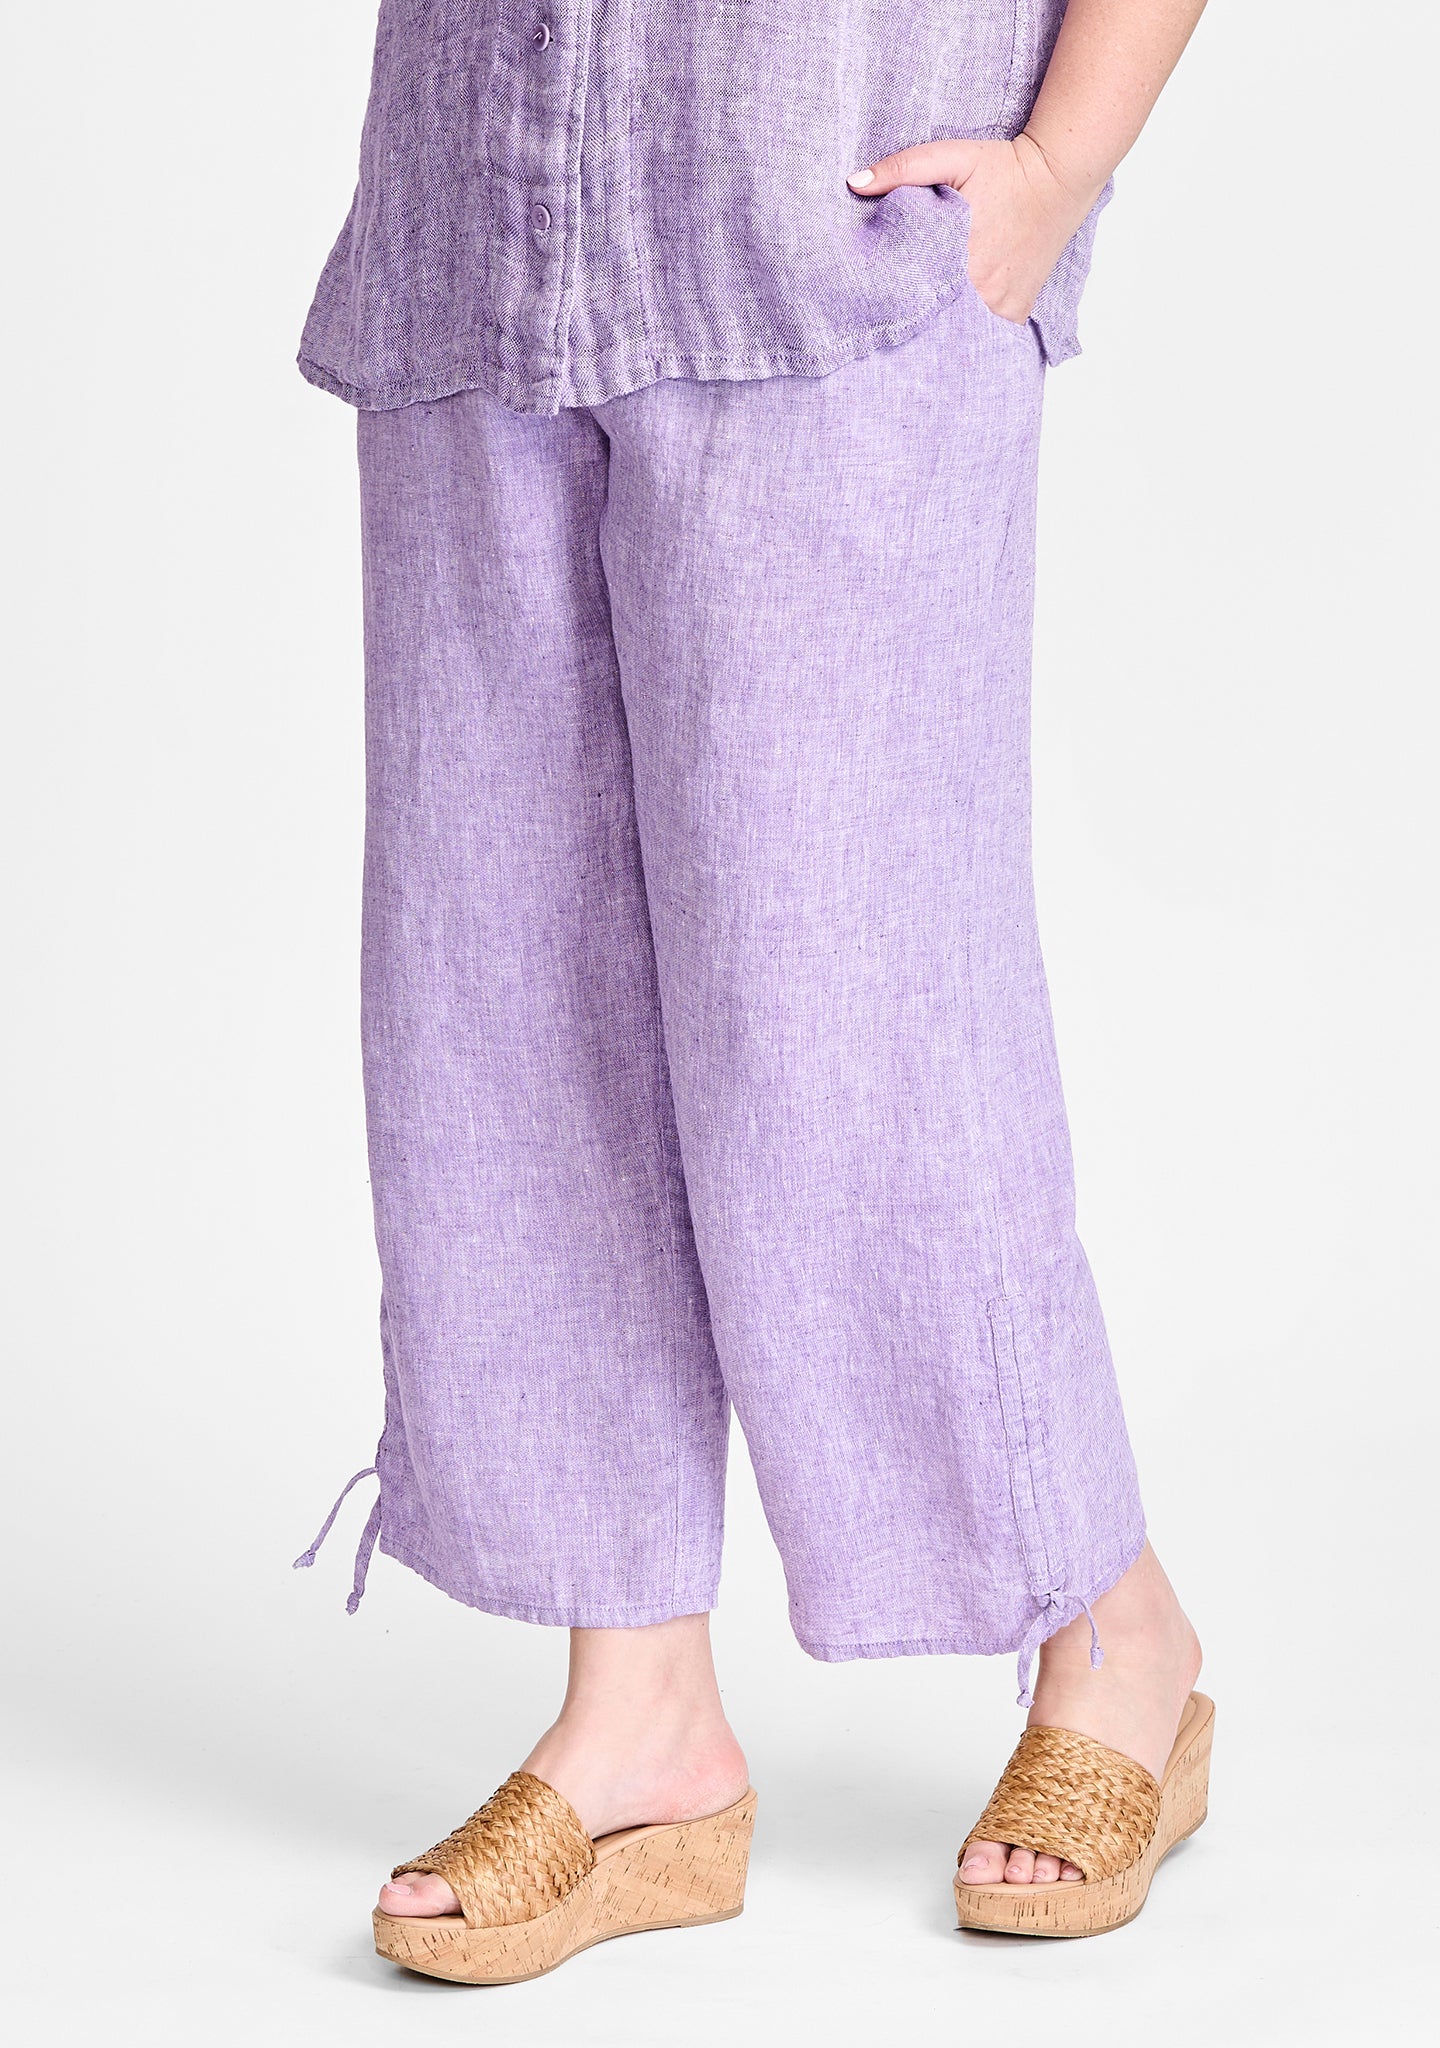 zen pant linen pants with elastic waist purple